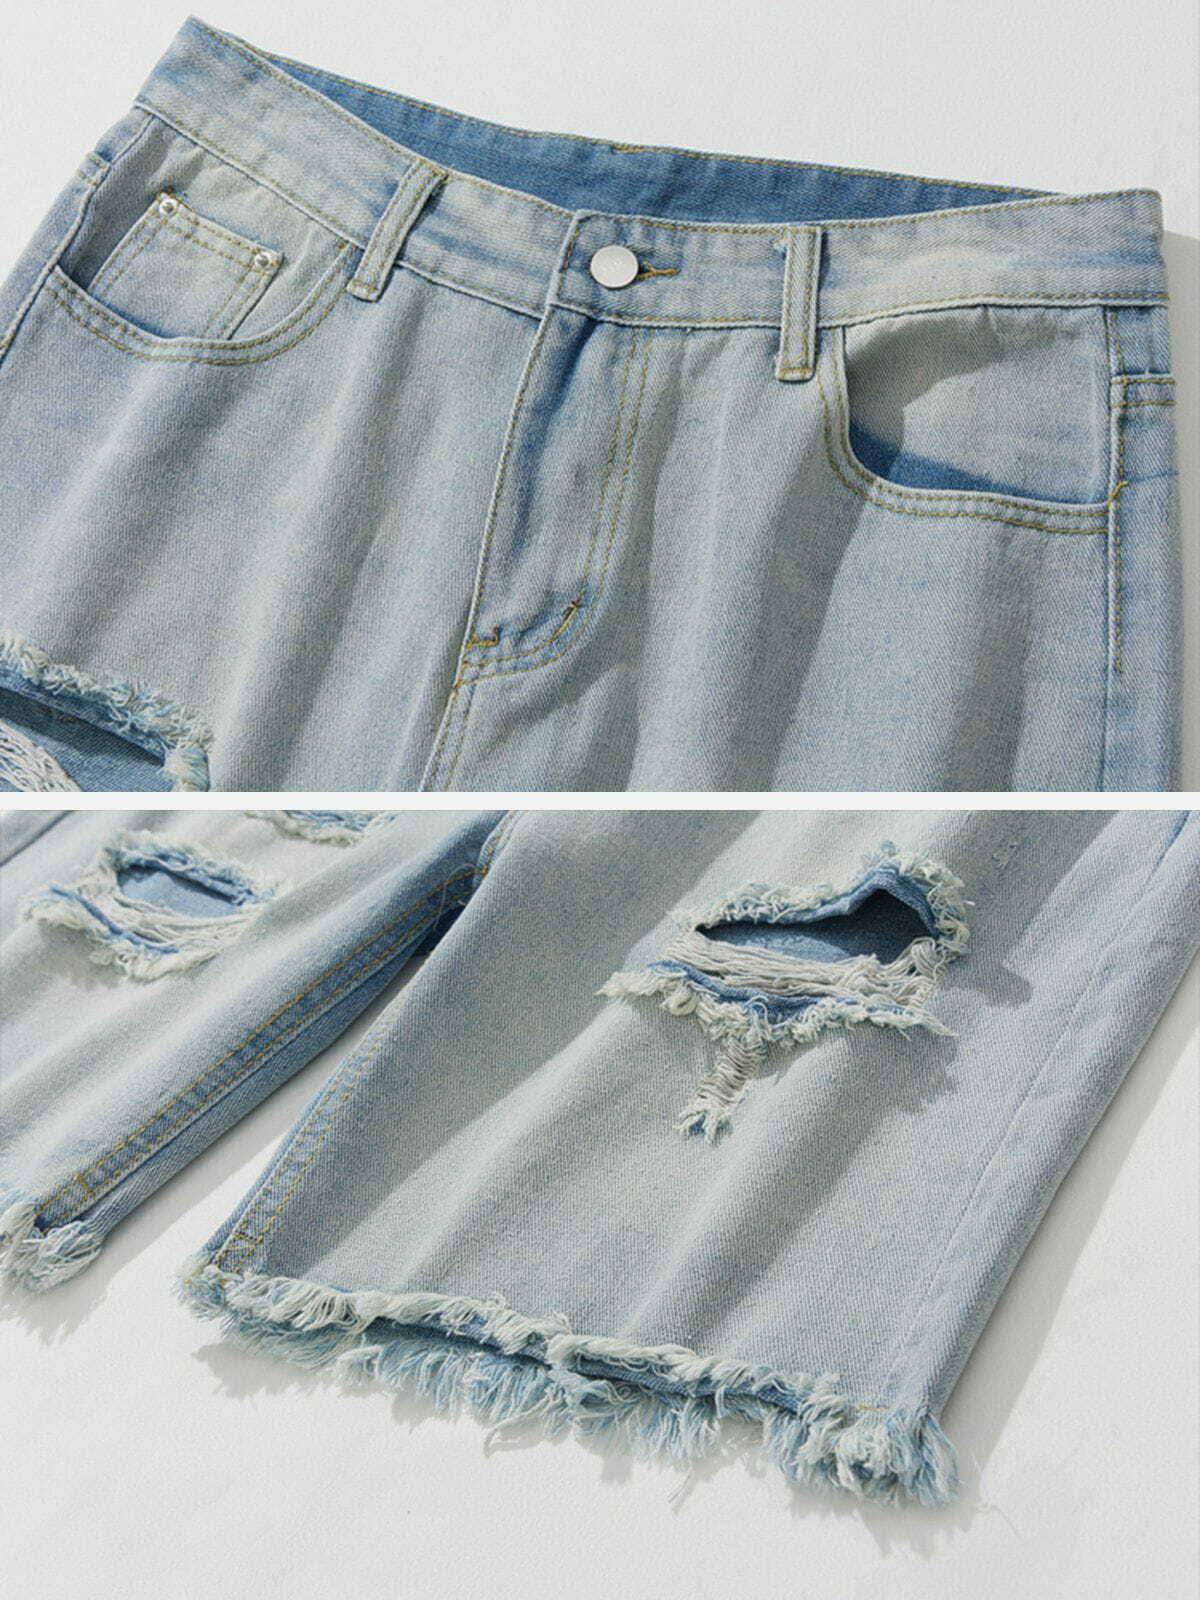 vintage washed denim shorts retro & urban style 7552